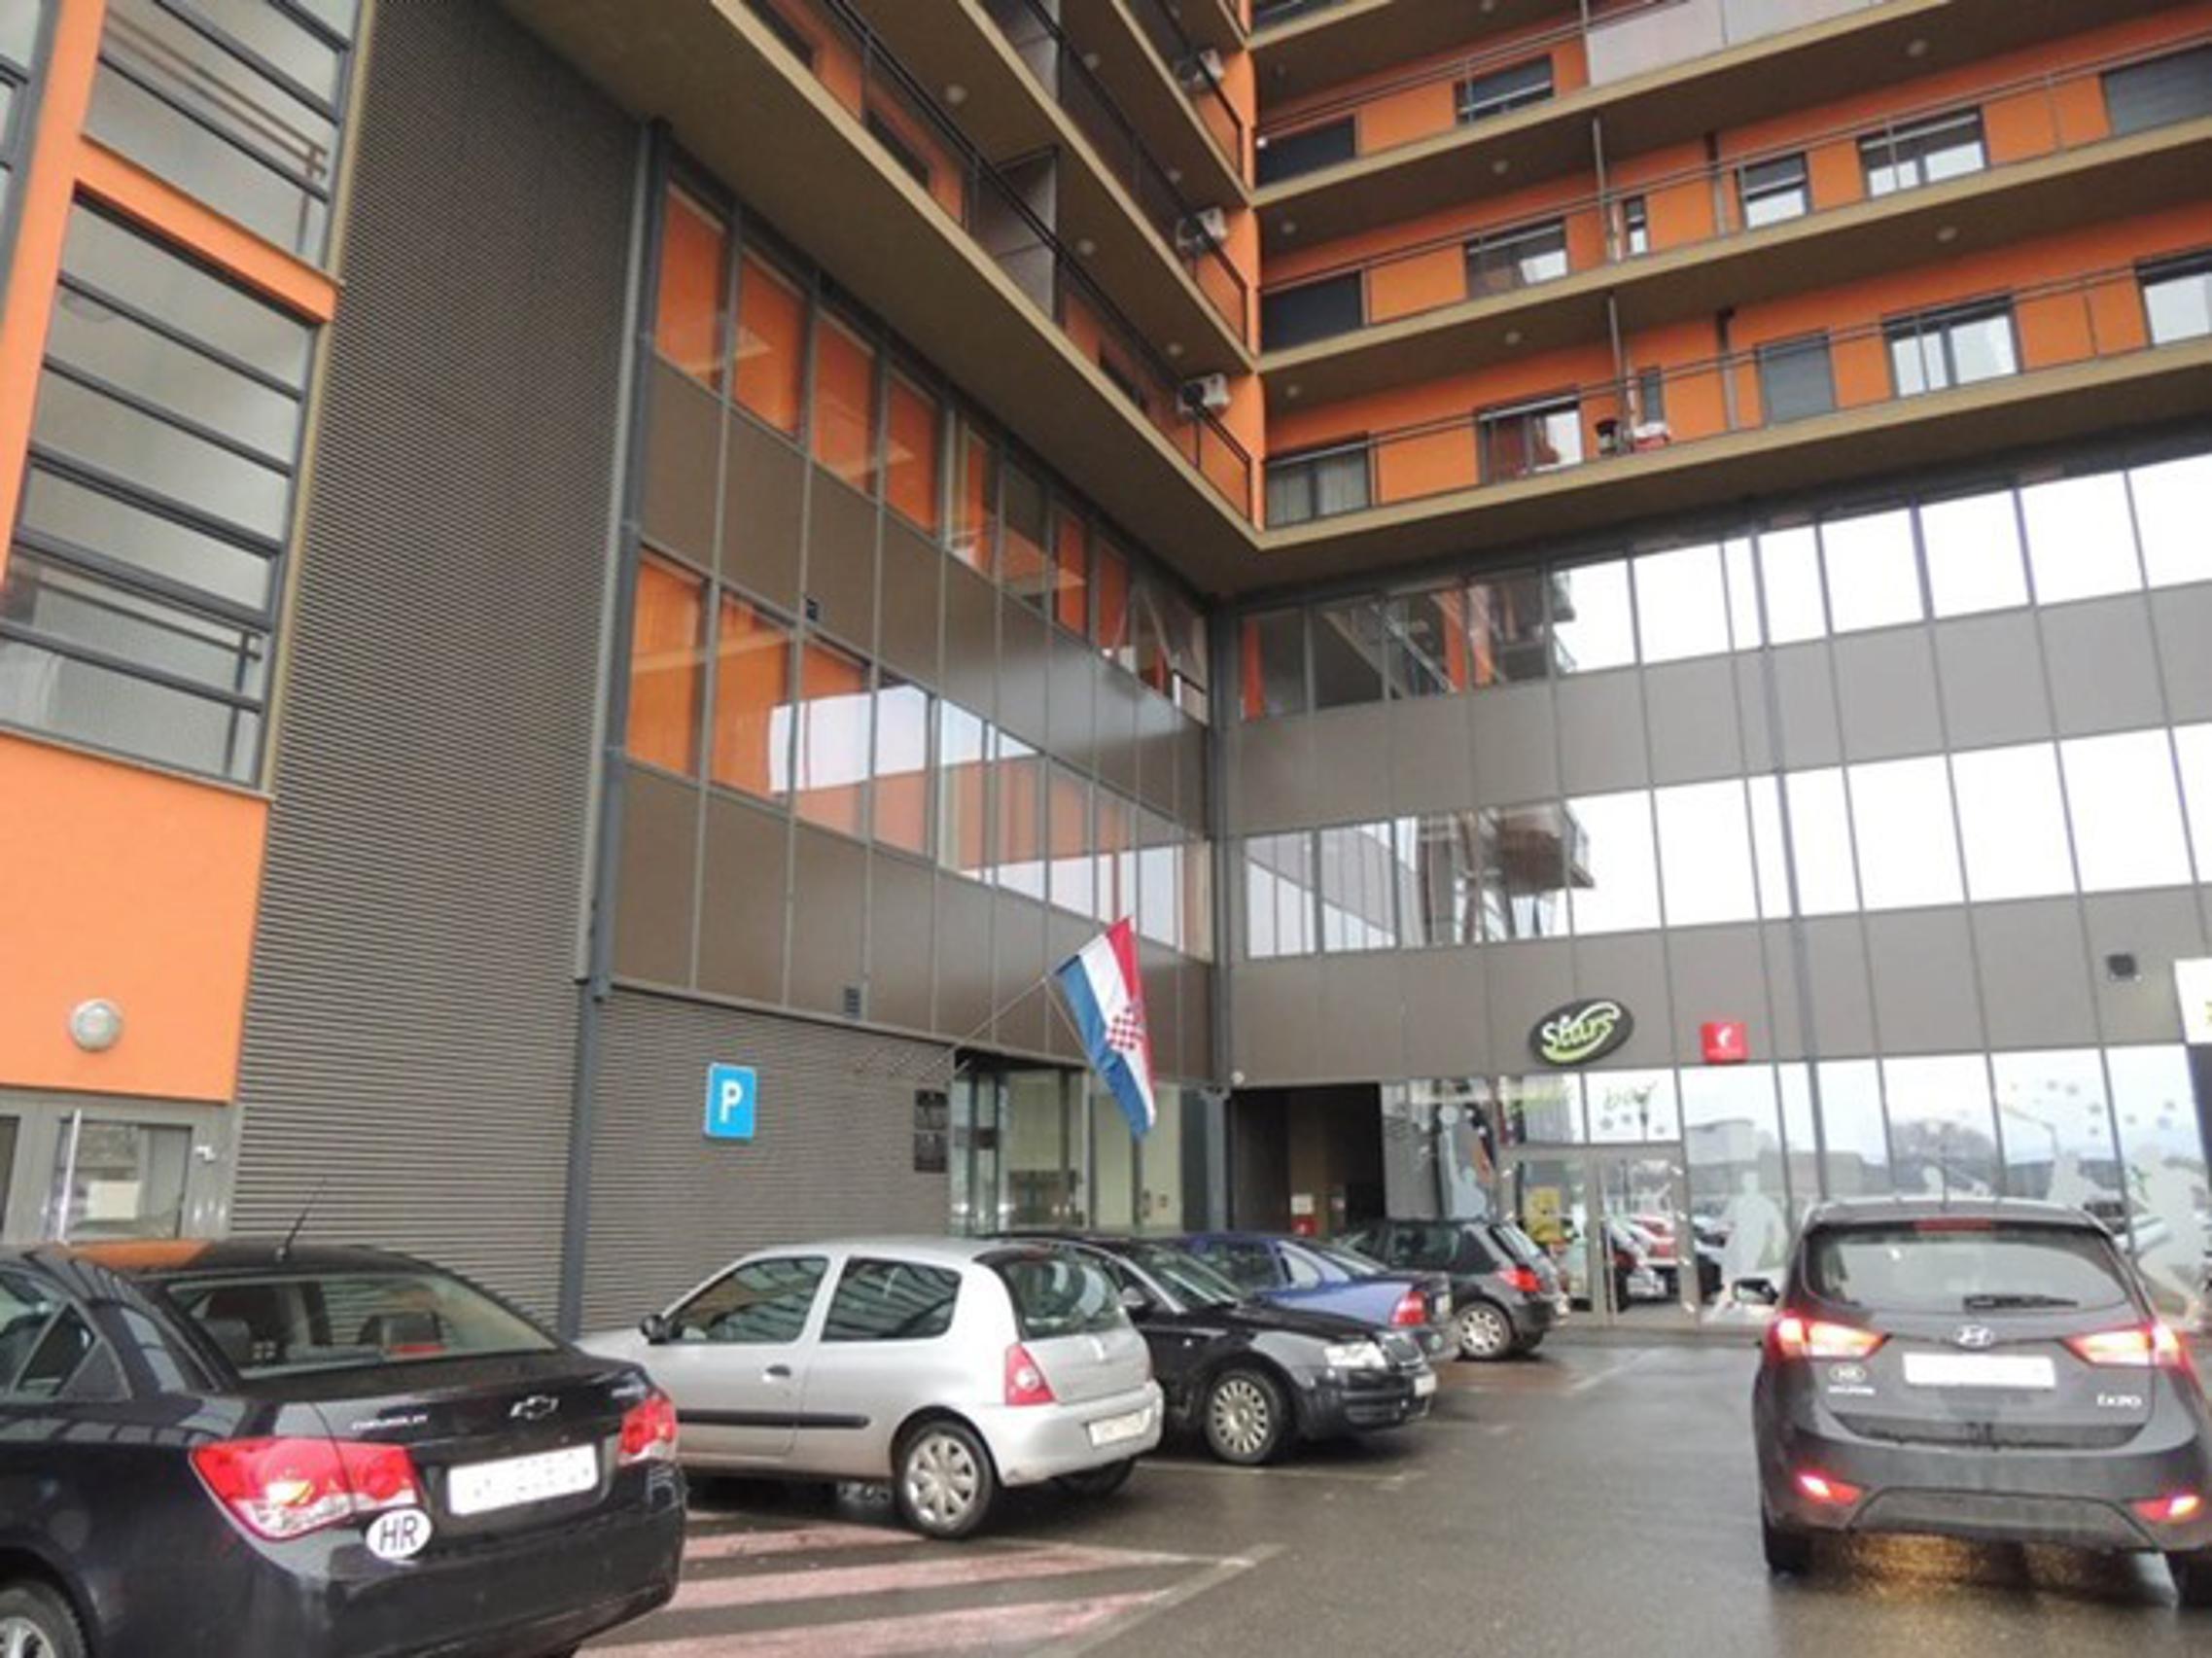 Parkiralište ispred Područnog ureda Porezne uprave u Slavonskom Brodu